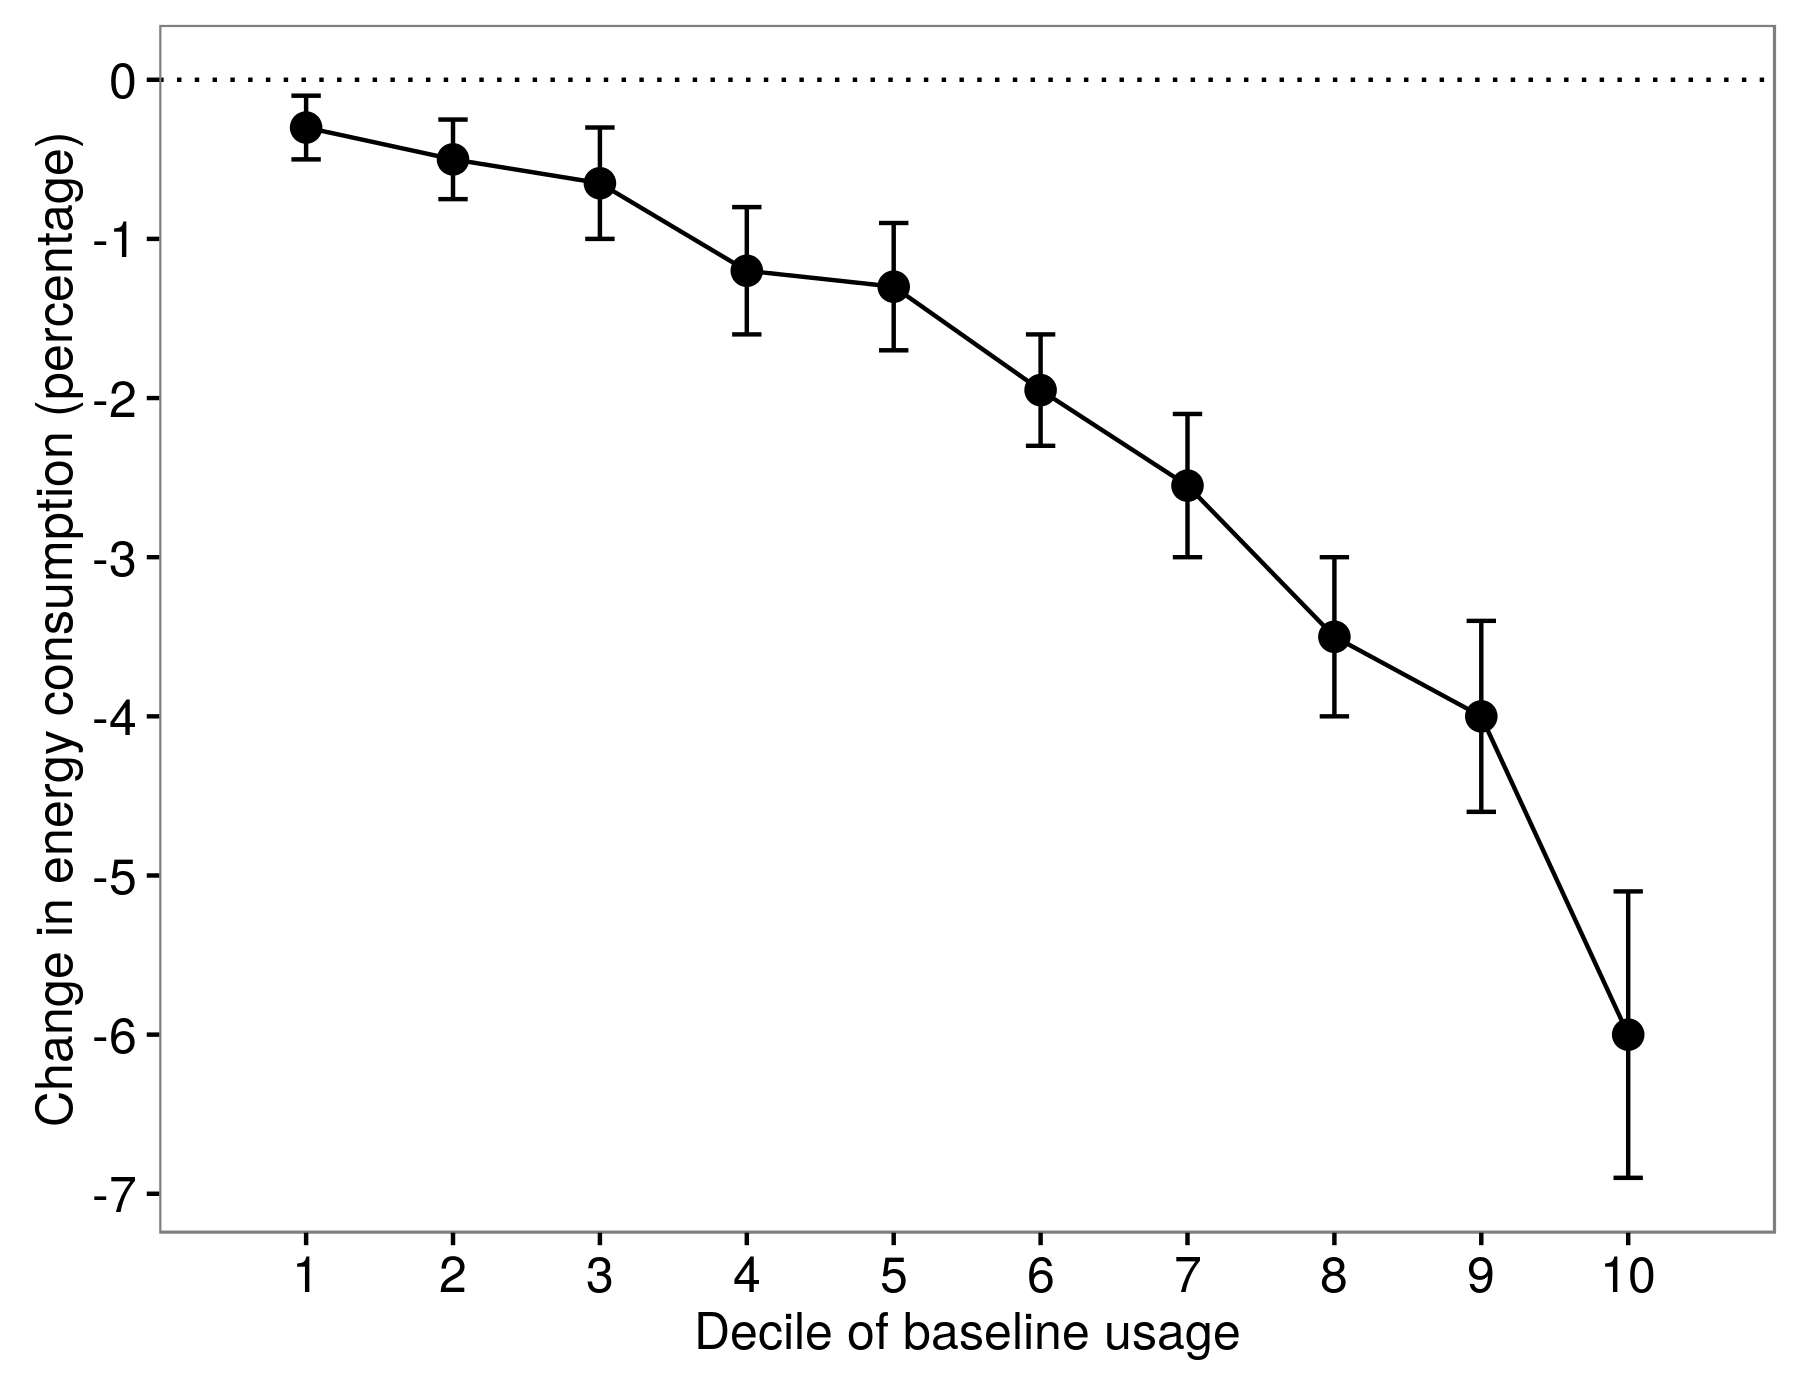 Рисунок 4.8: Неоднородность эффектов лечения в Allcott (2011). Снижение потребления энергии было разным для людей в разных децилях базового использования. Адаптировано из Allcott (2011), рисунок 8.